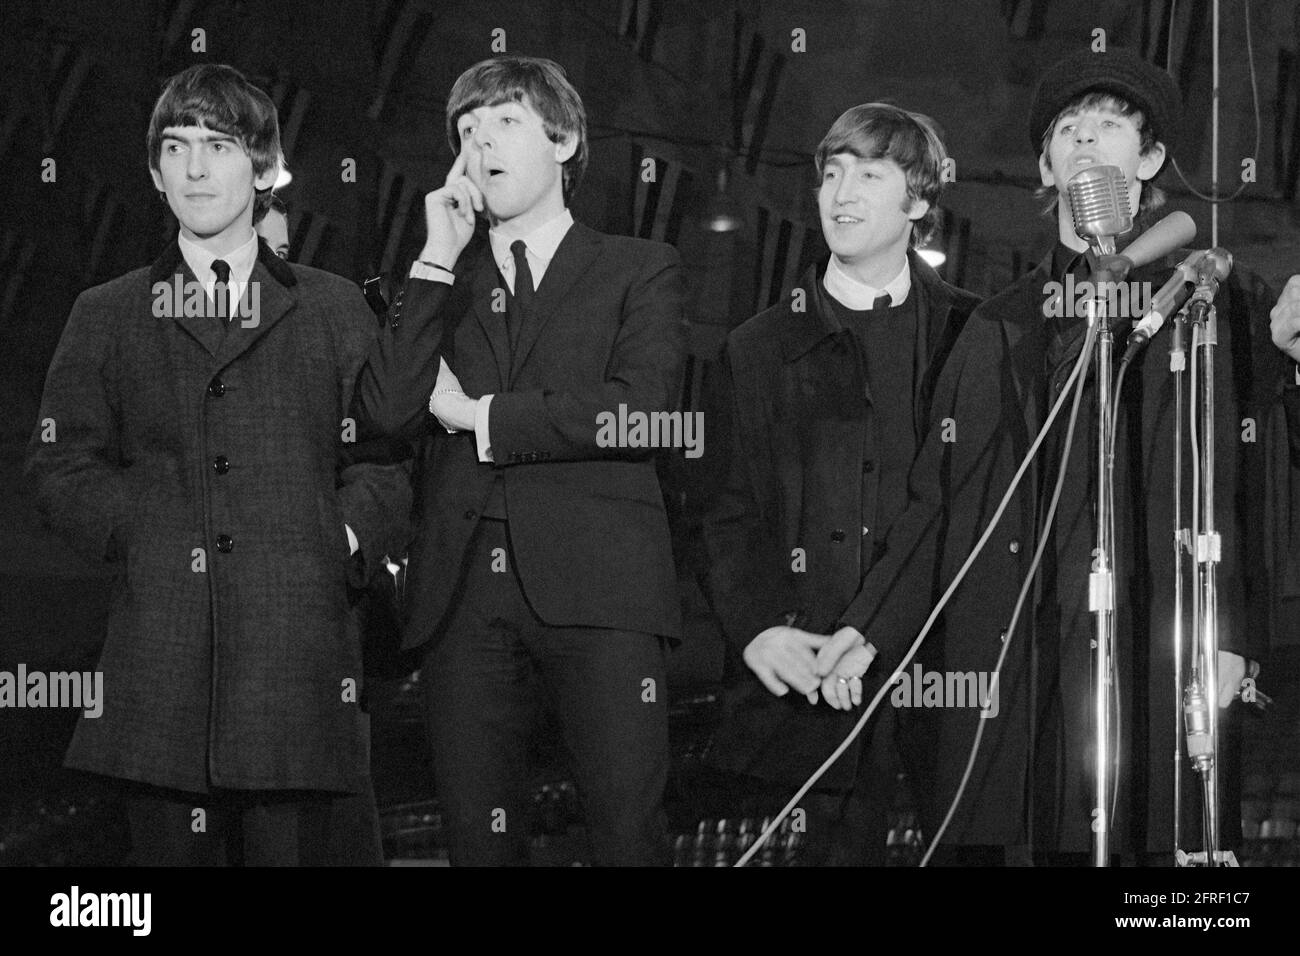 Les Beatles arrivent à une conférence de presse le 11 février 1964 avant leur premier concert en Amérique au Washington Coliseum le 11 février 1964. George Harrison, Paul McCartney, John Lennon et Ringo Starr sont photographiés de gauche à droite. (ÉTATS-UNIS) Banque D'Images